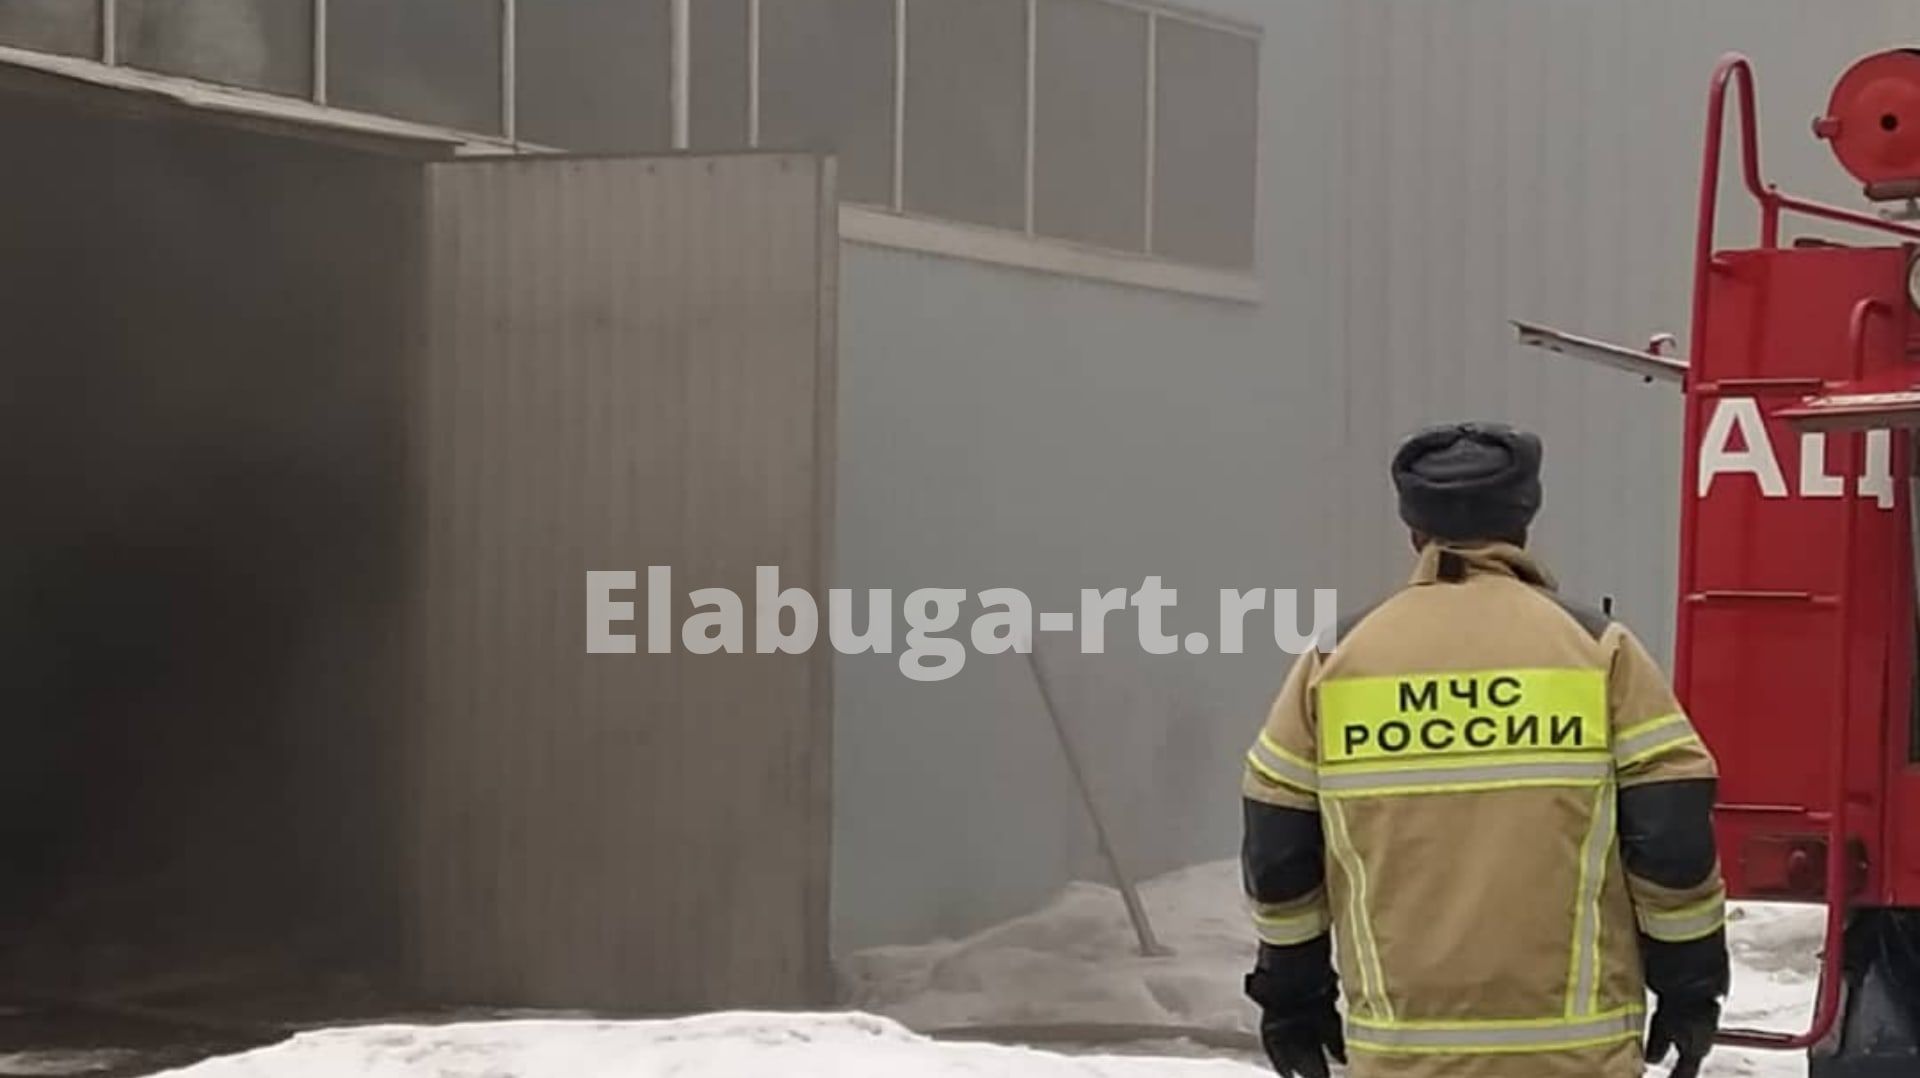 В Елабуге на складе произошел пожар